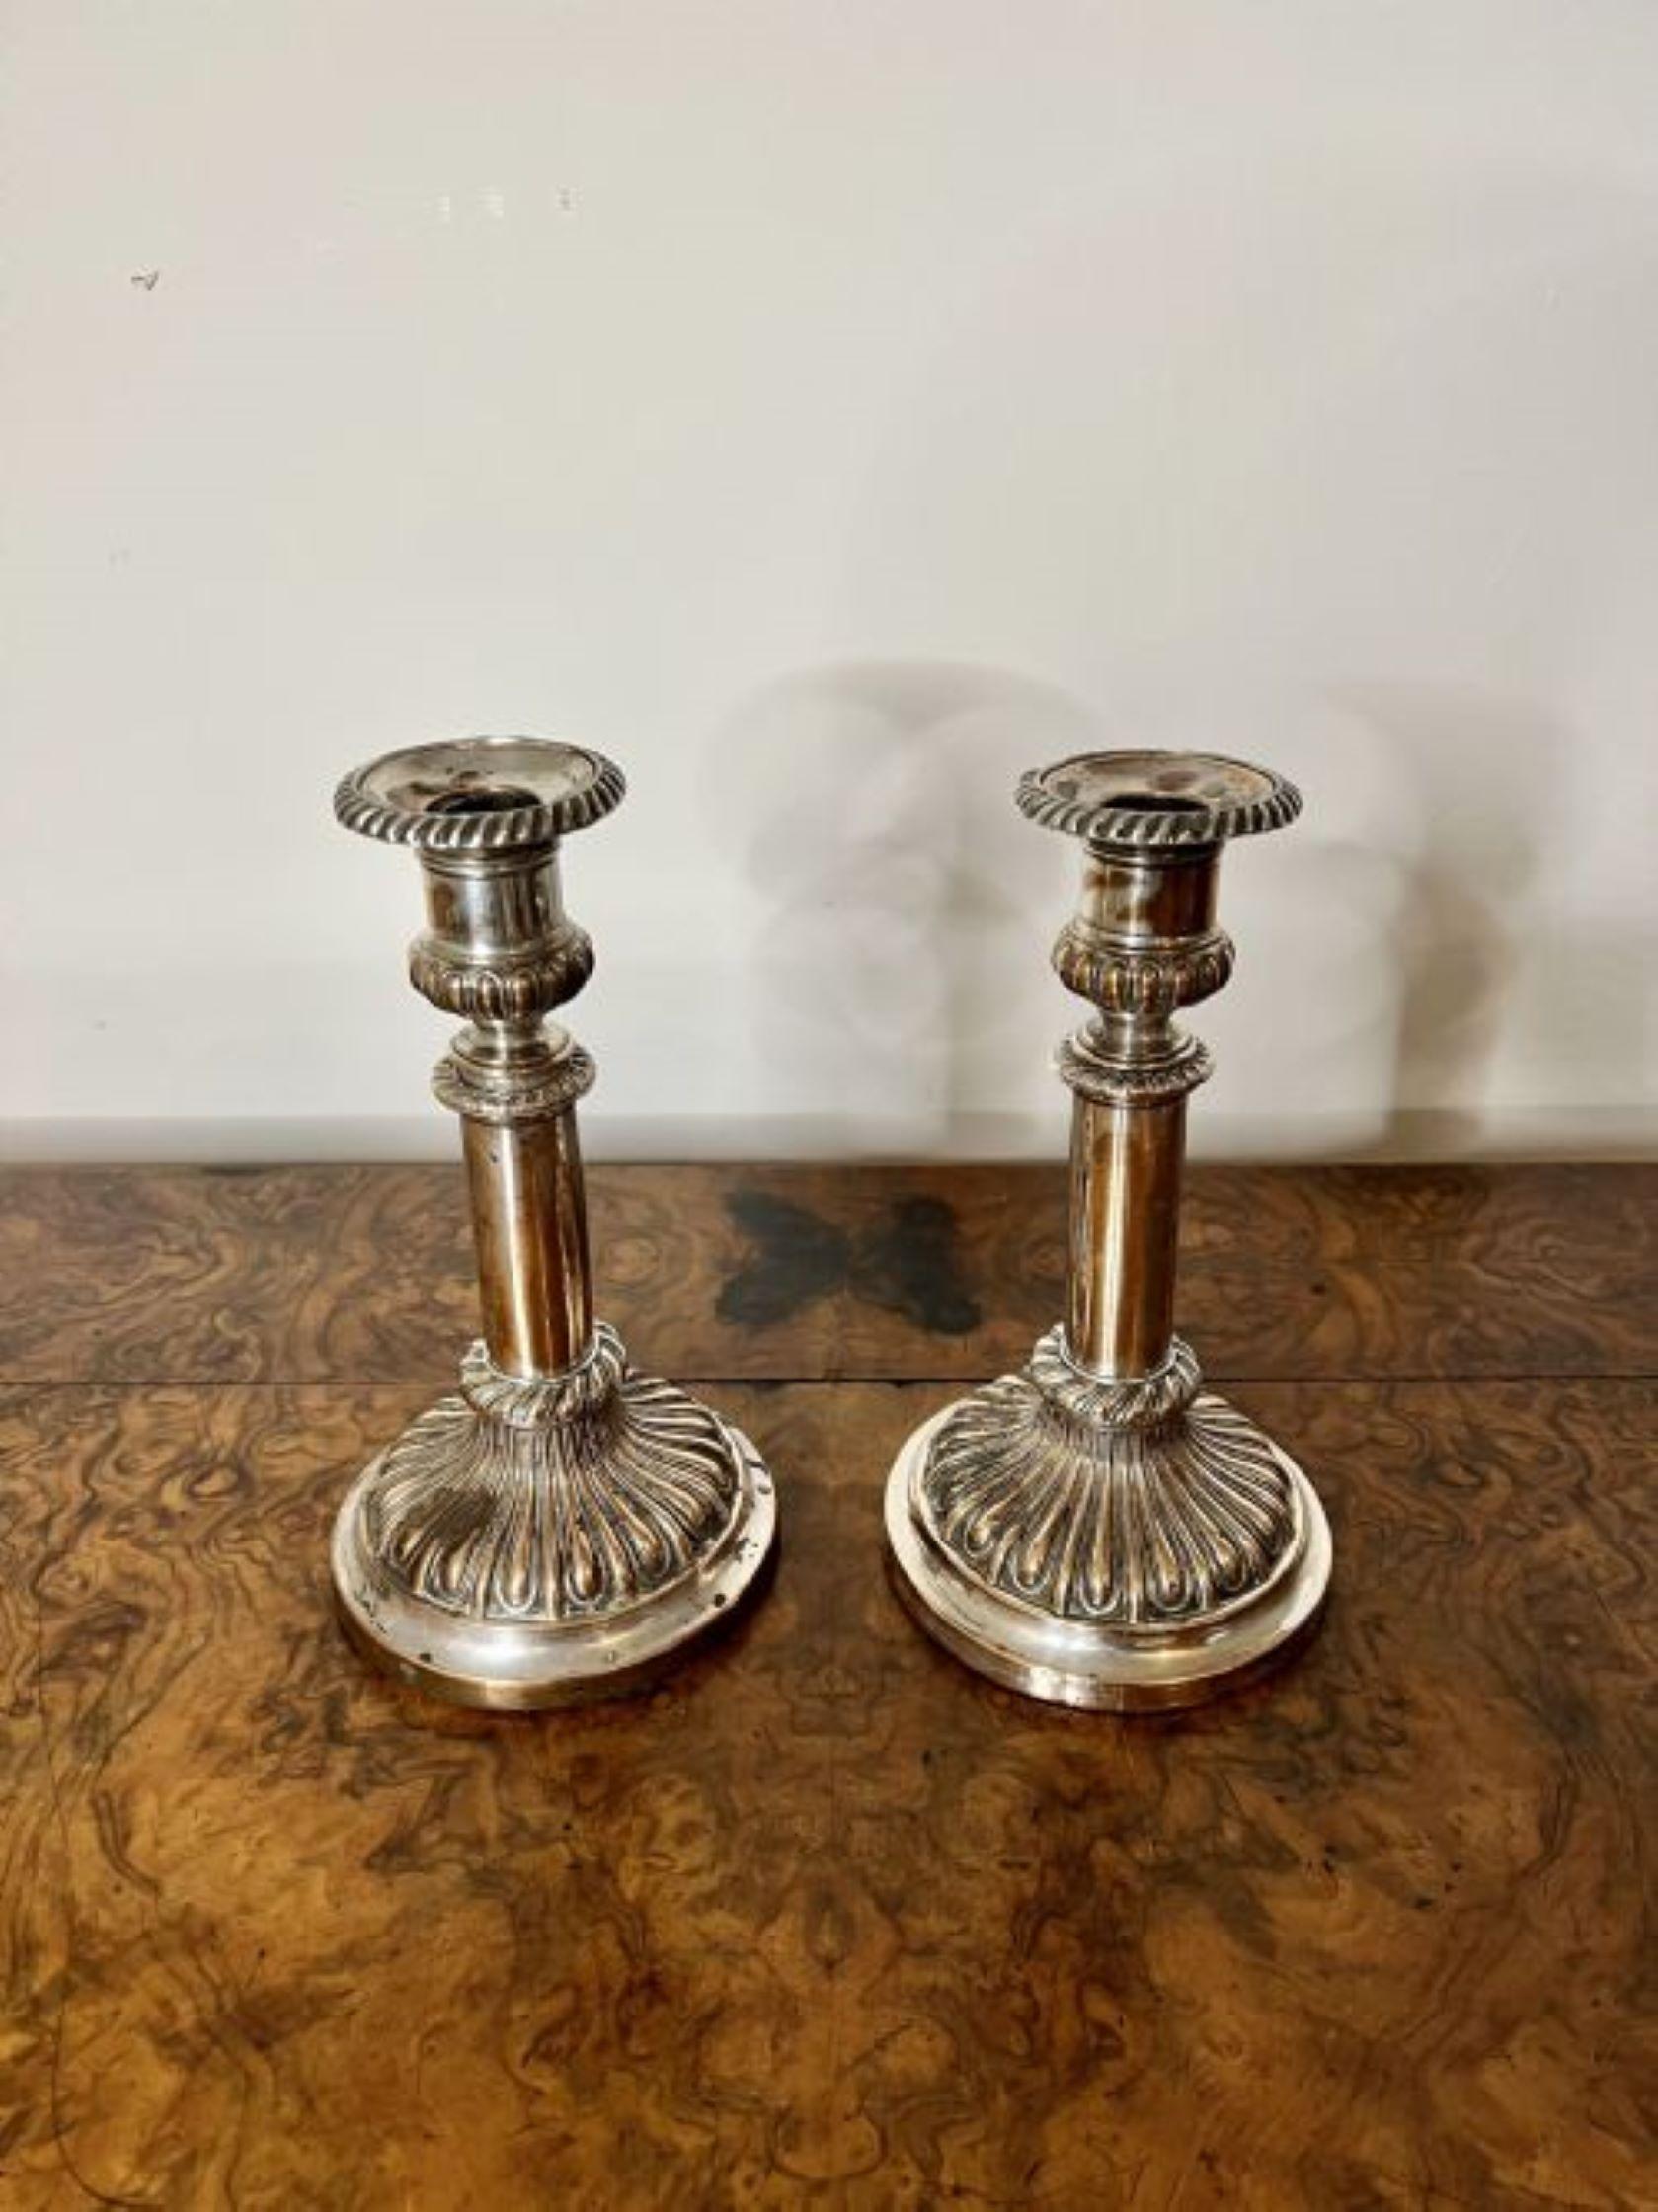 Paar antike George III Teleskop-Kerzenständer mit einem schönen Paar antiker George III versilbert auf Kupfer Teleskop-Kerzenständer stehend kreisförmig abgestuften Basen.